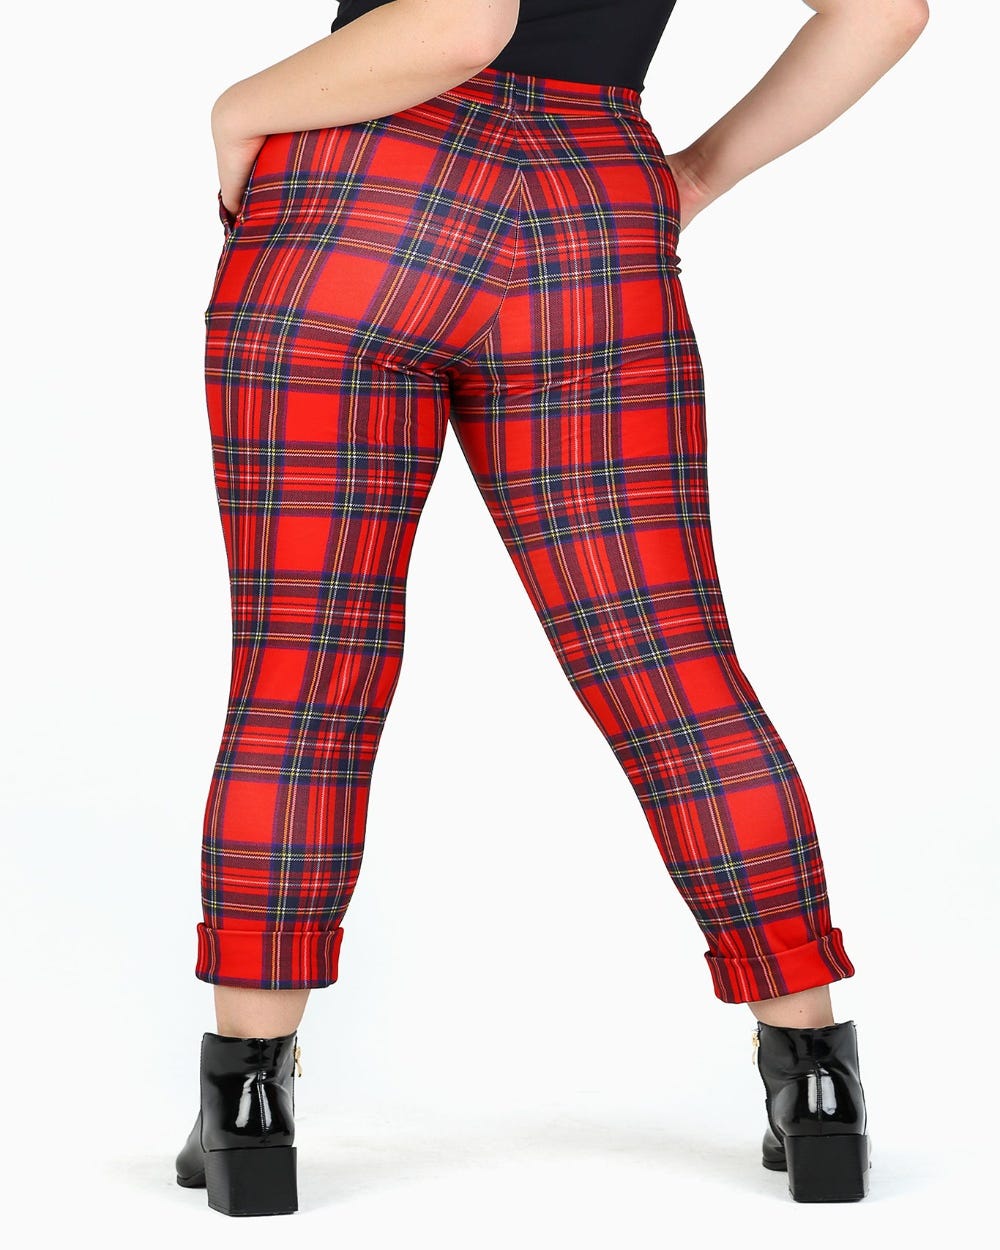 Tartan Red Cuffed Pants - Limited